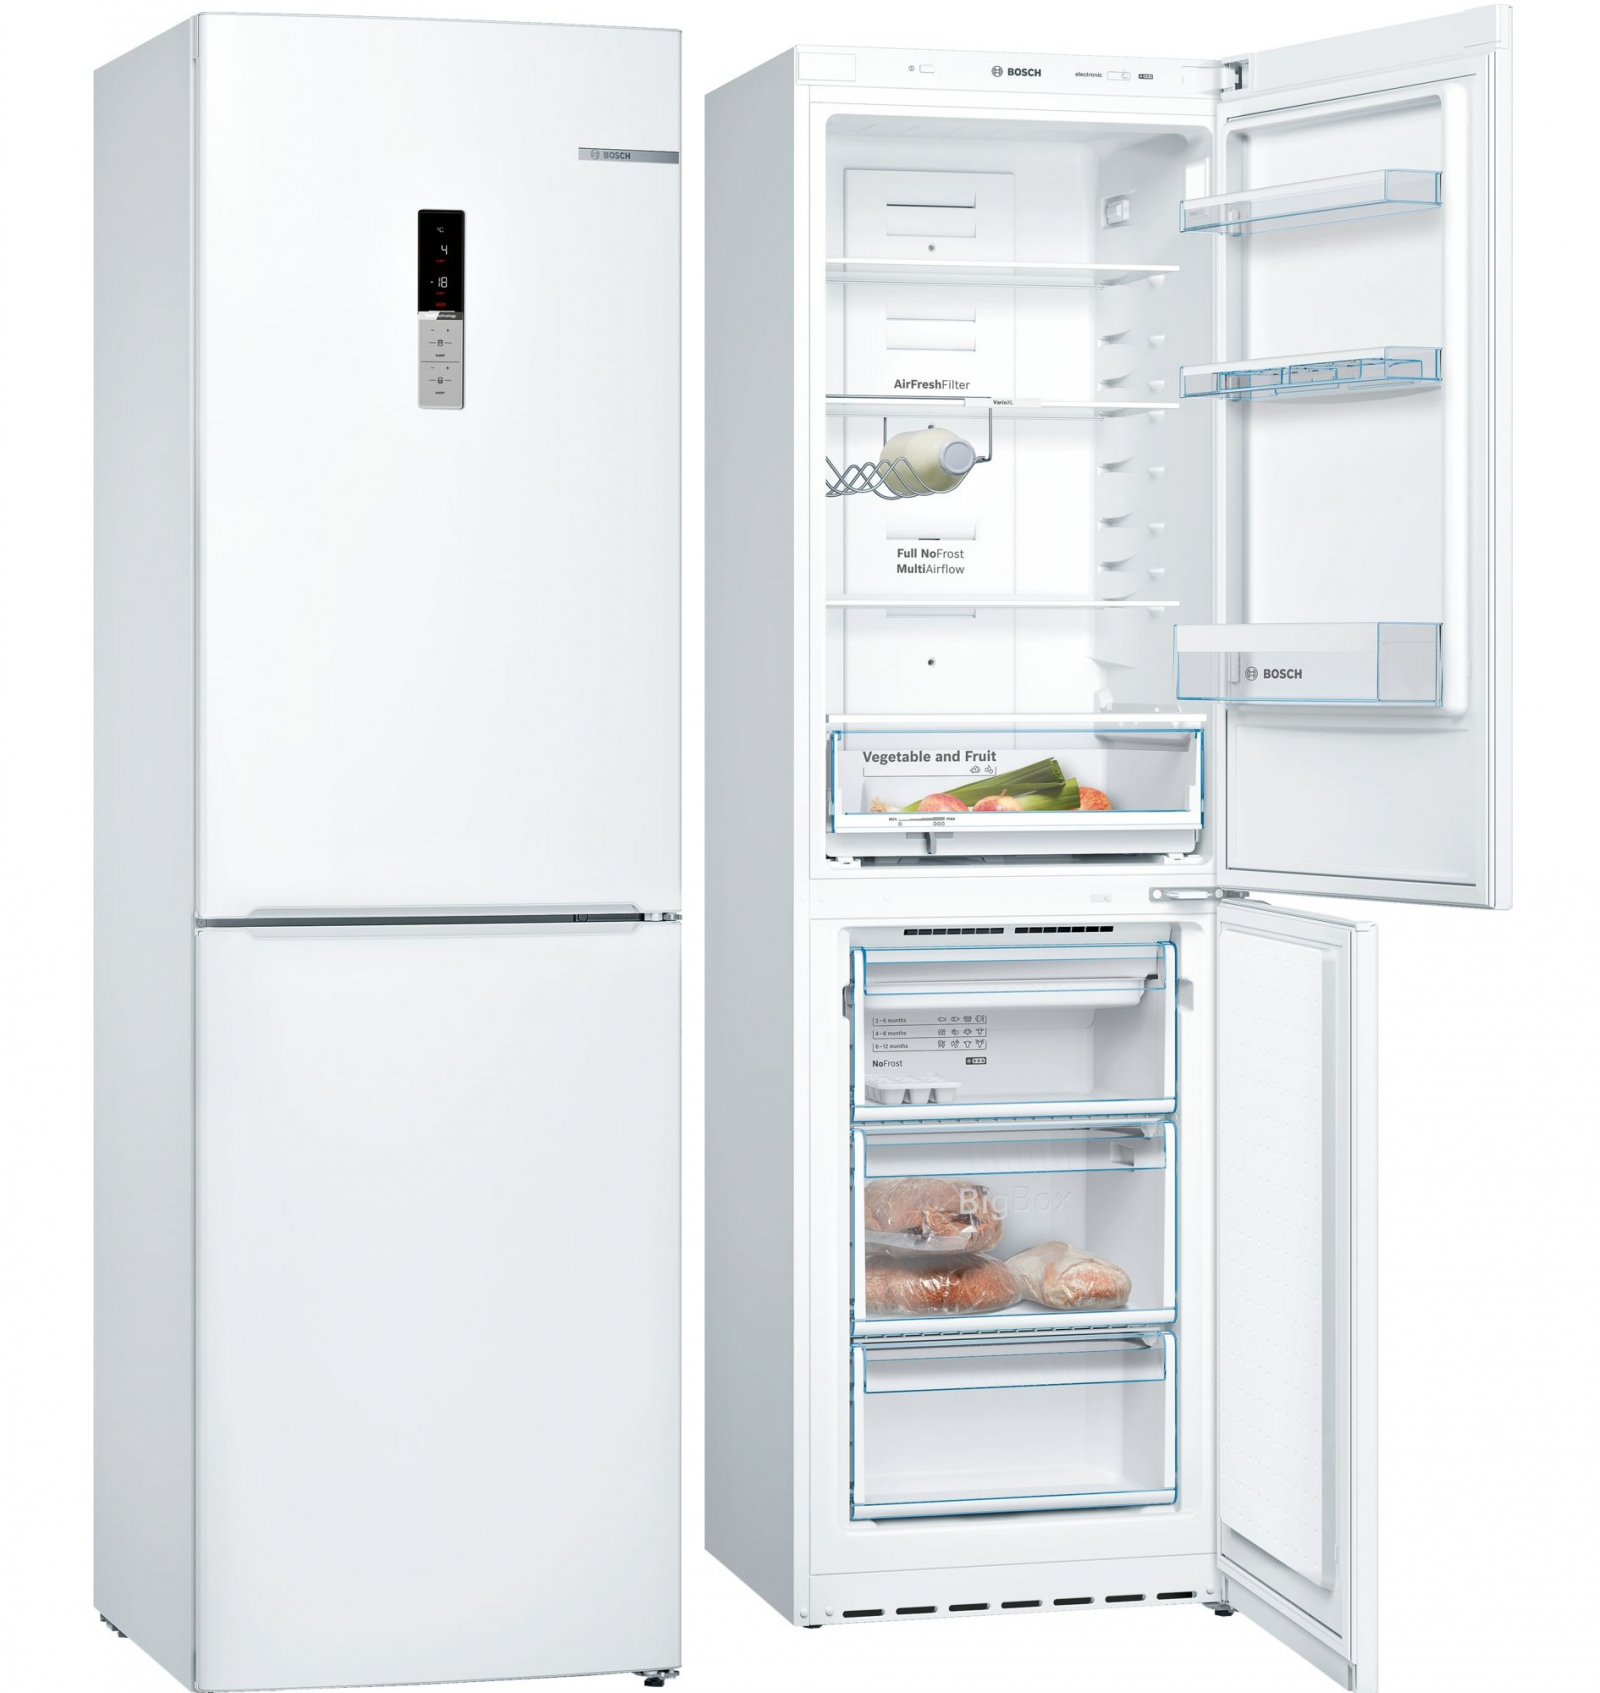 холодильник bosch kgn39vw16r, купить в Красноярске холодильник bosch kgn39vw16r,  купить в Красноярске дешево холодильник bosch kgn39vw16r, купить в Красноярске минимальной цене холодильник bosch kgn39vw16r